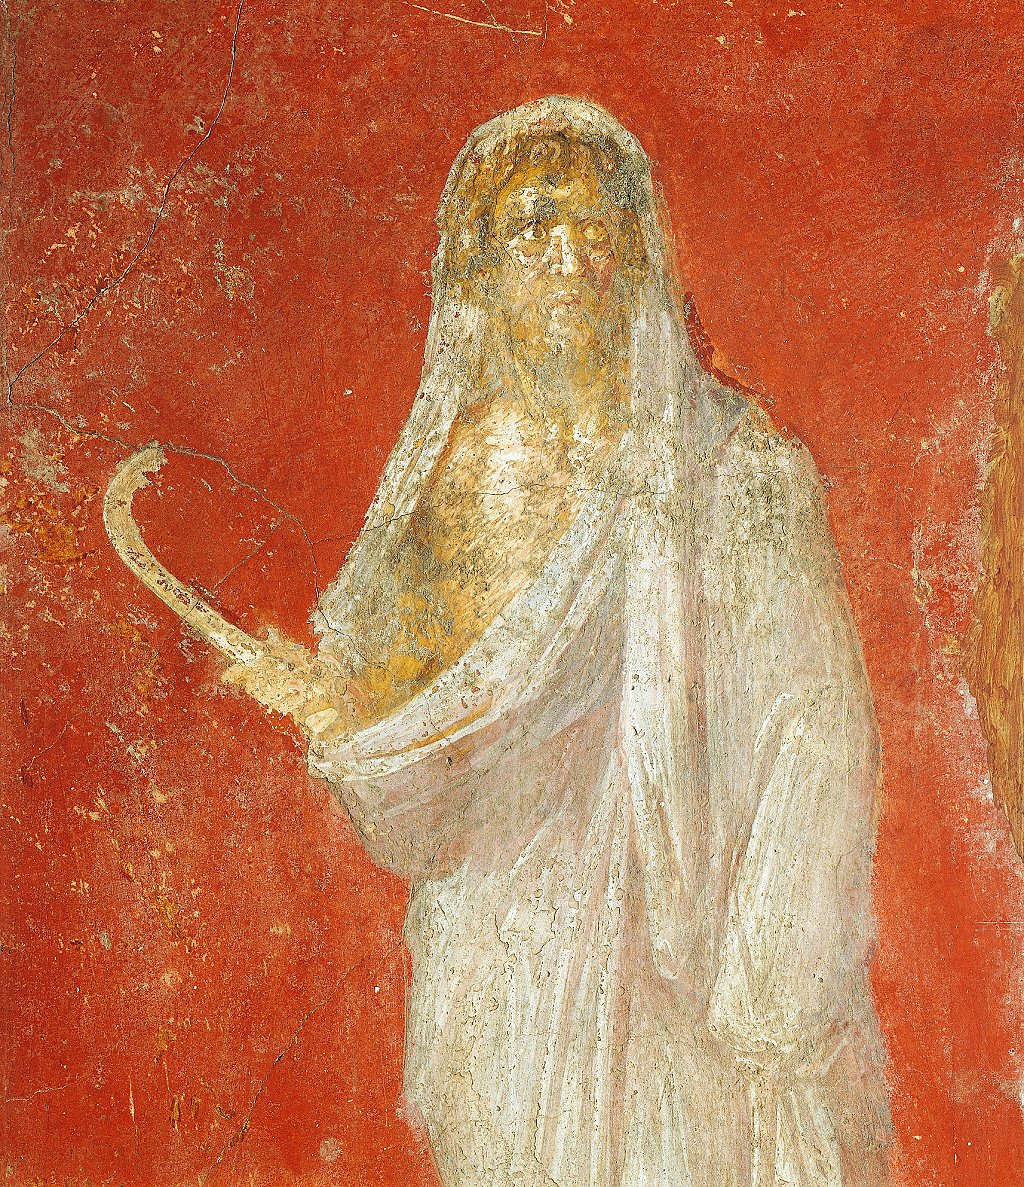 Saturno, aquí en un fresco del siglo I d.C. de Pompeya